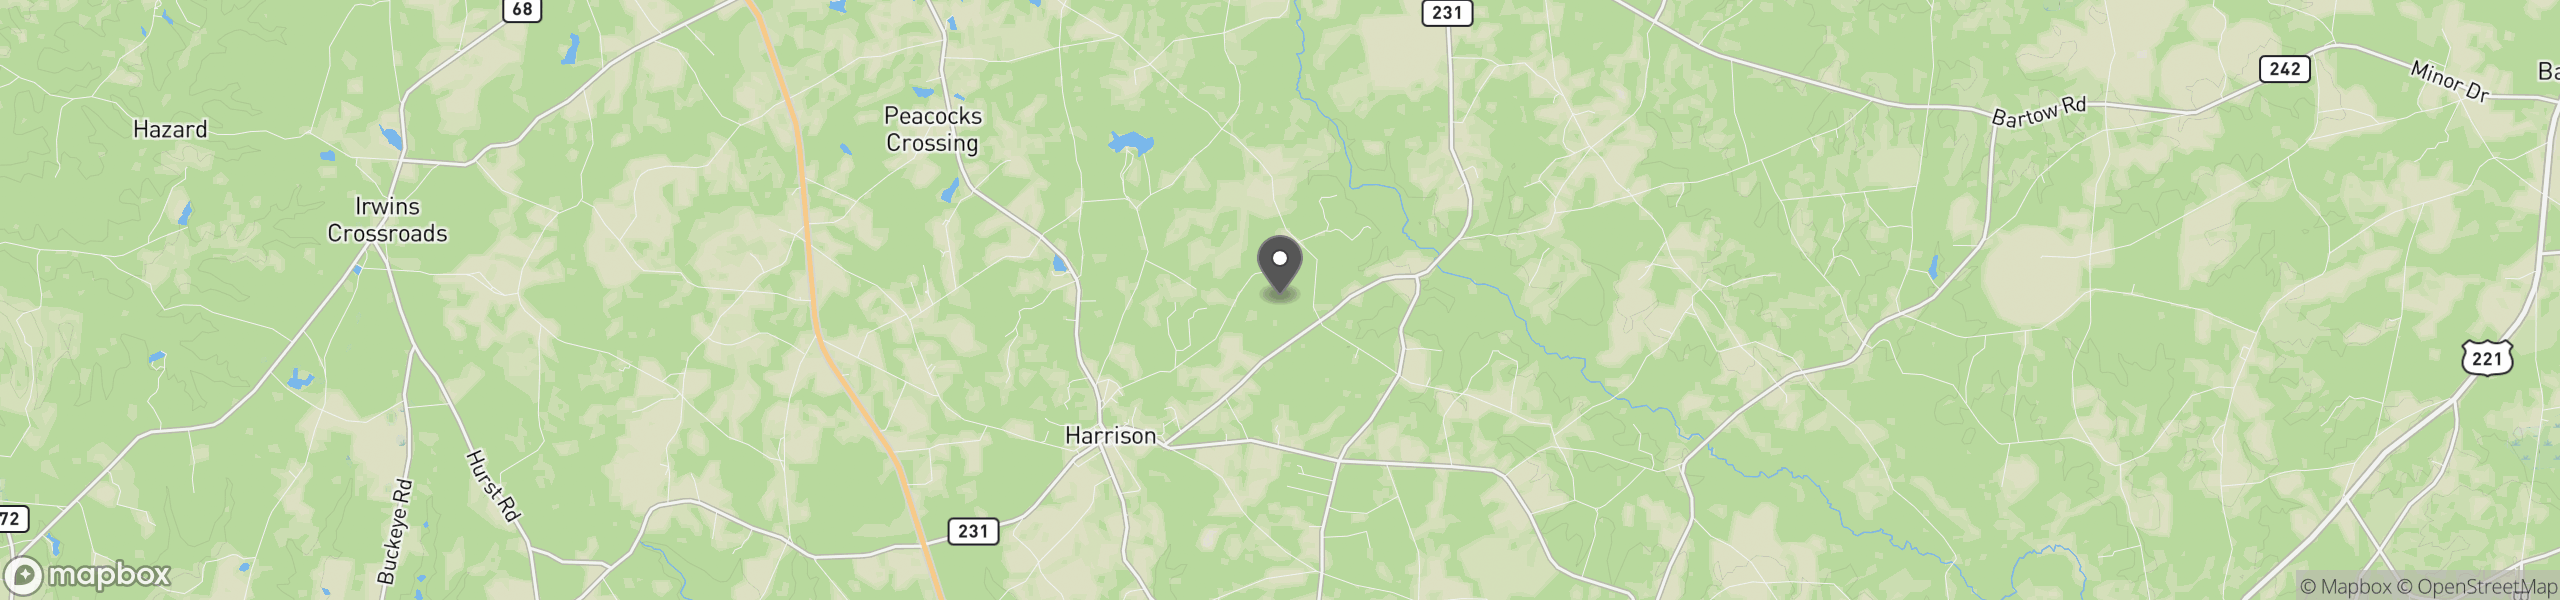 Harrison, GA